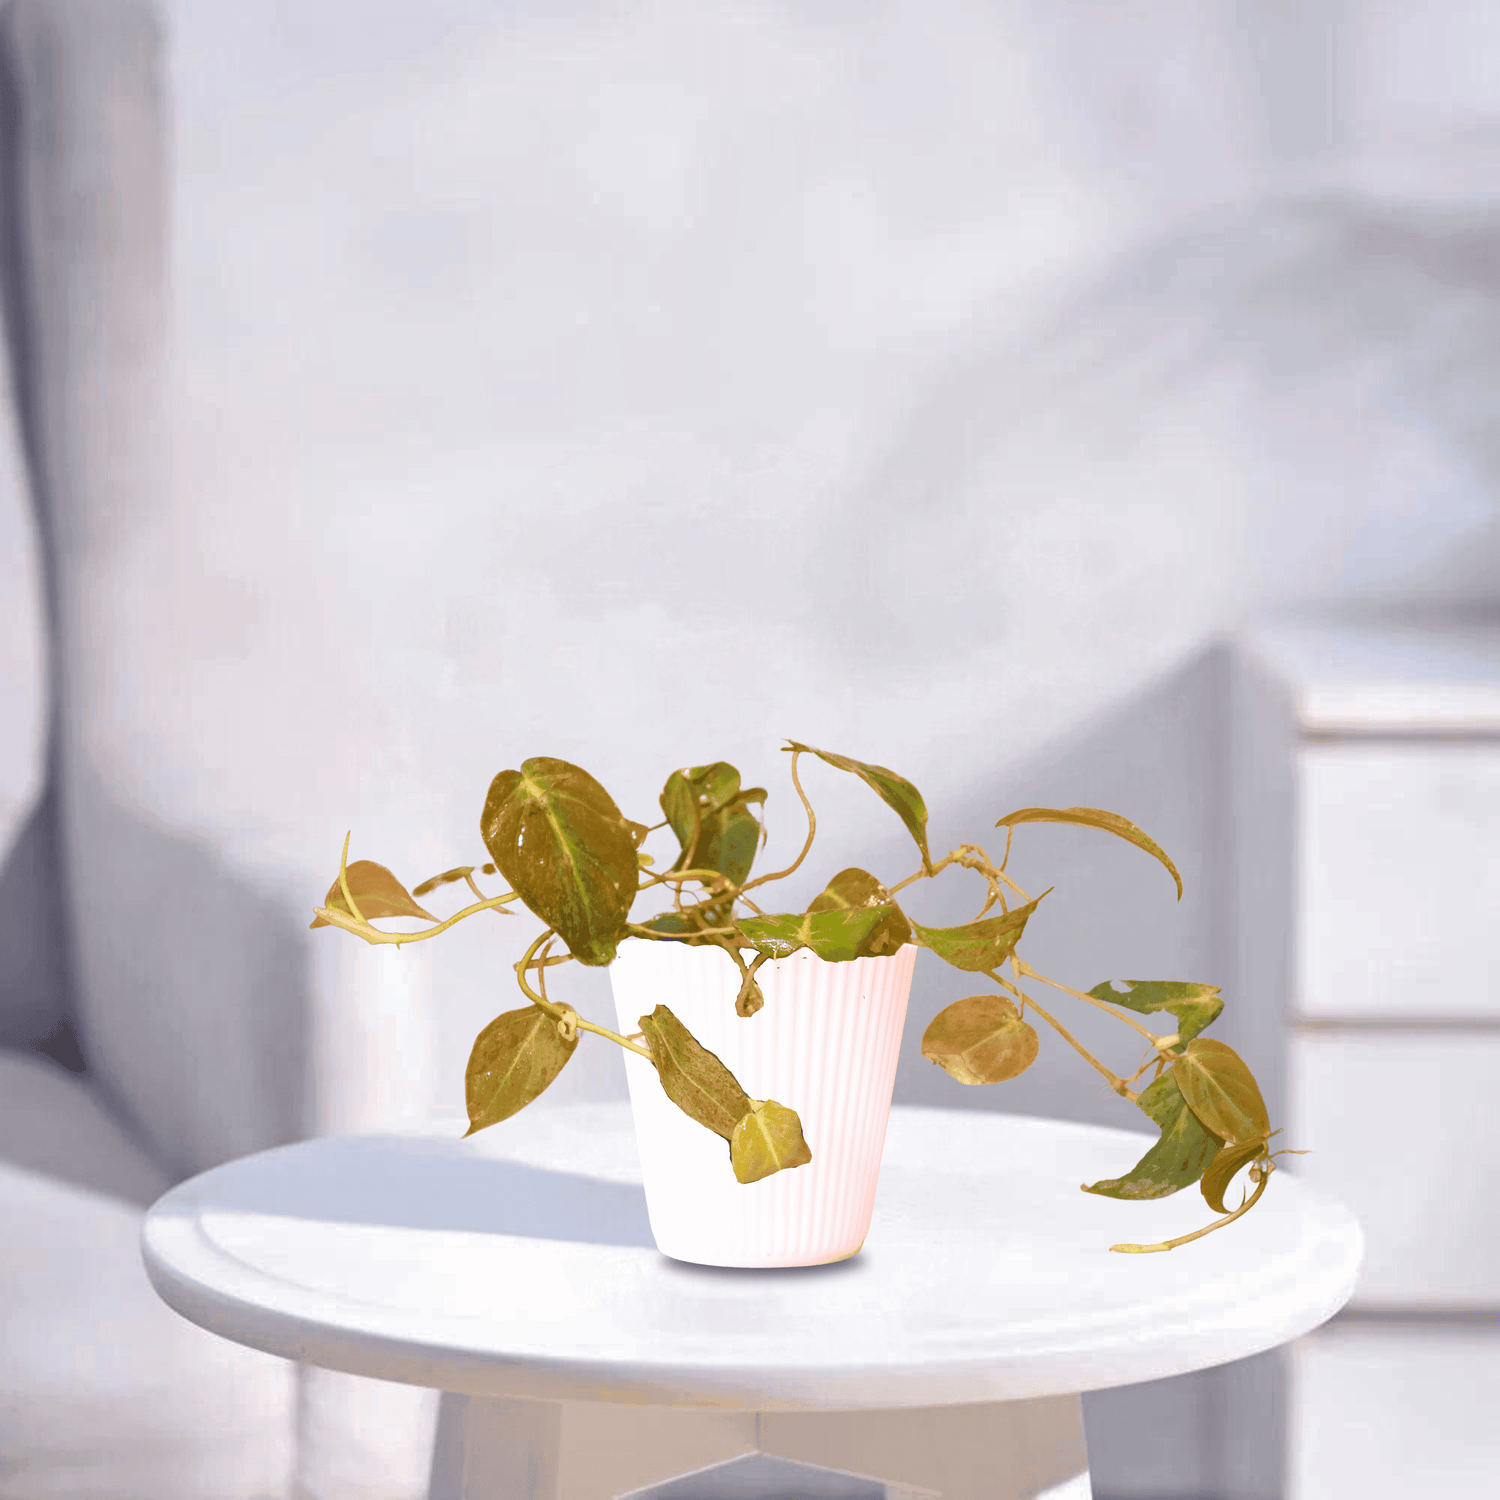 Pothos | Indoor Plant